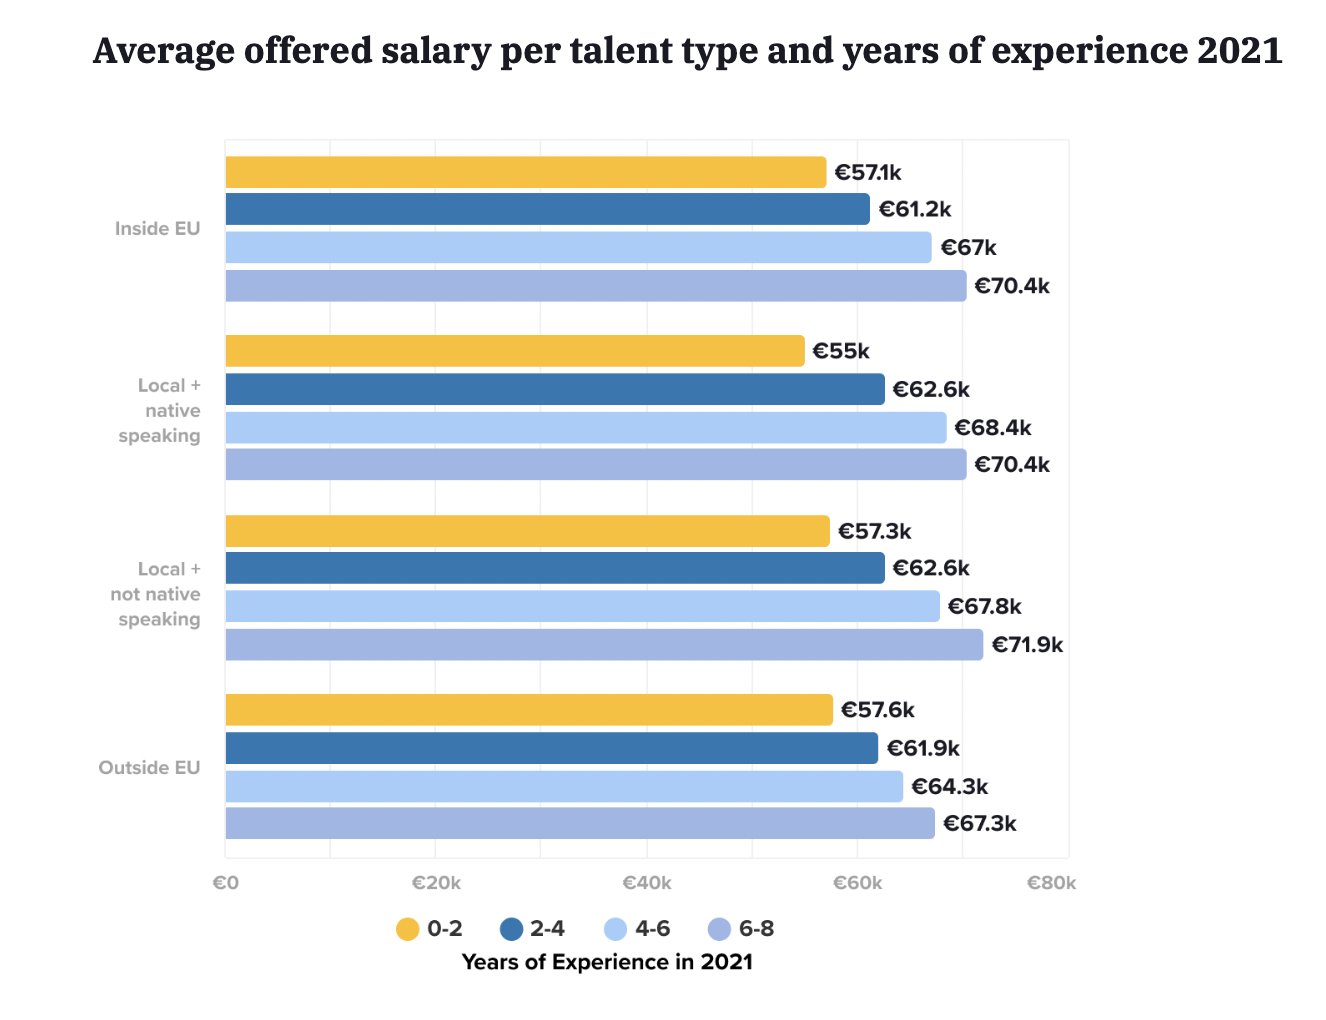   Salaire moyen offert par type de talent et années d'expérience en Allemagne en 2021 